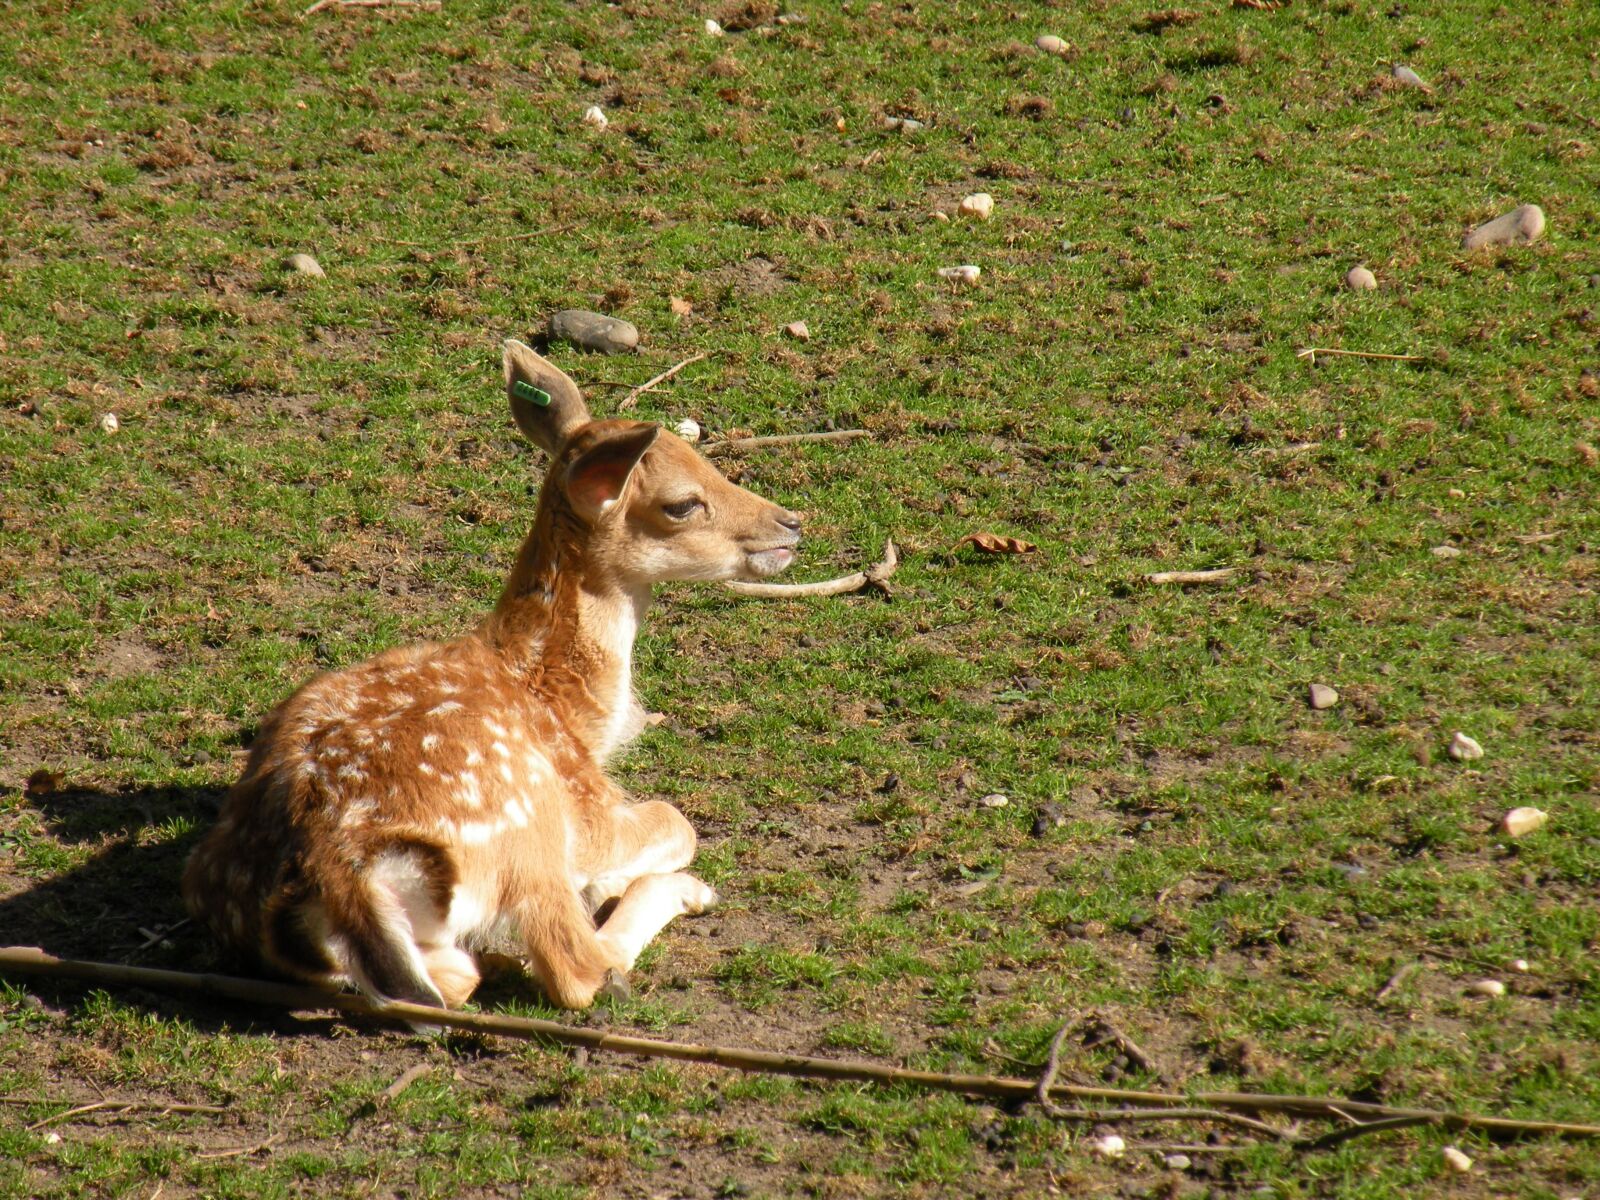 Nikon Coolpix P80 sample photo. Roe deer, kitz, bambi photography